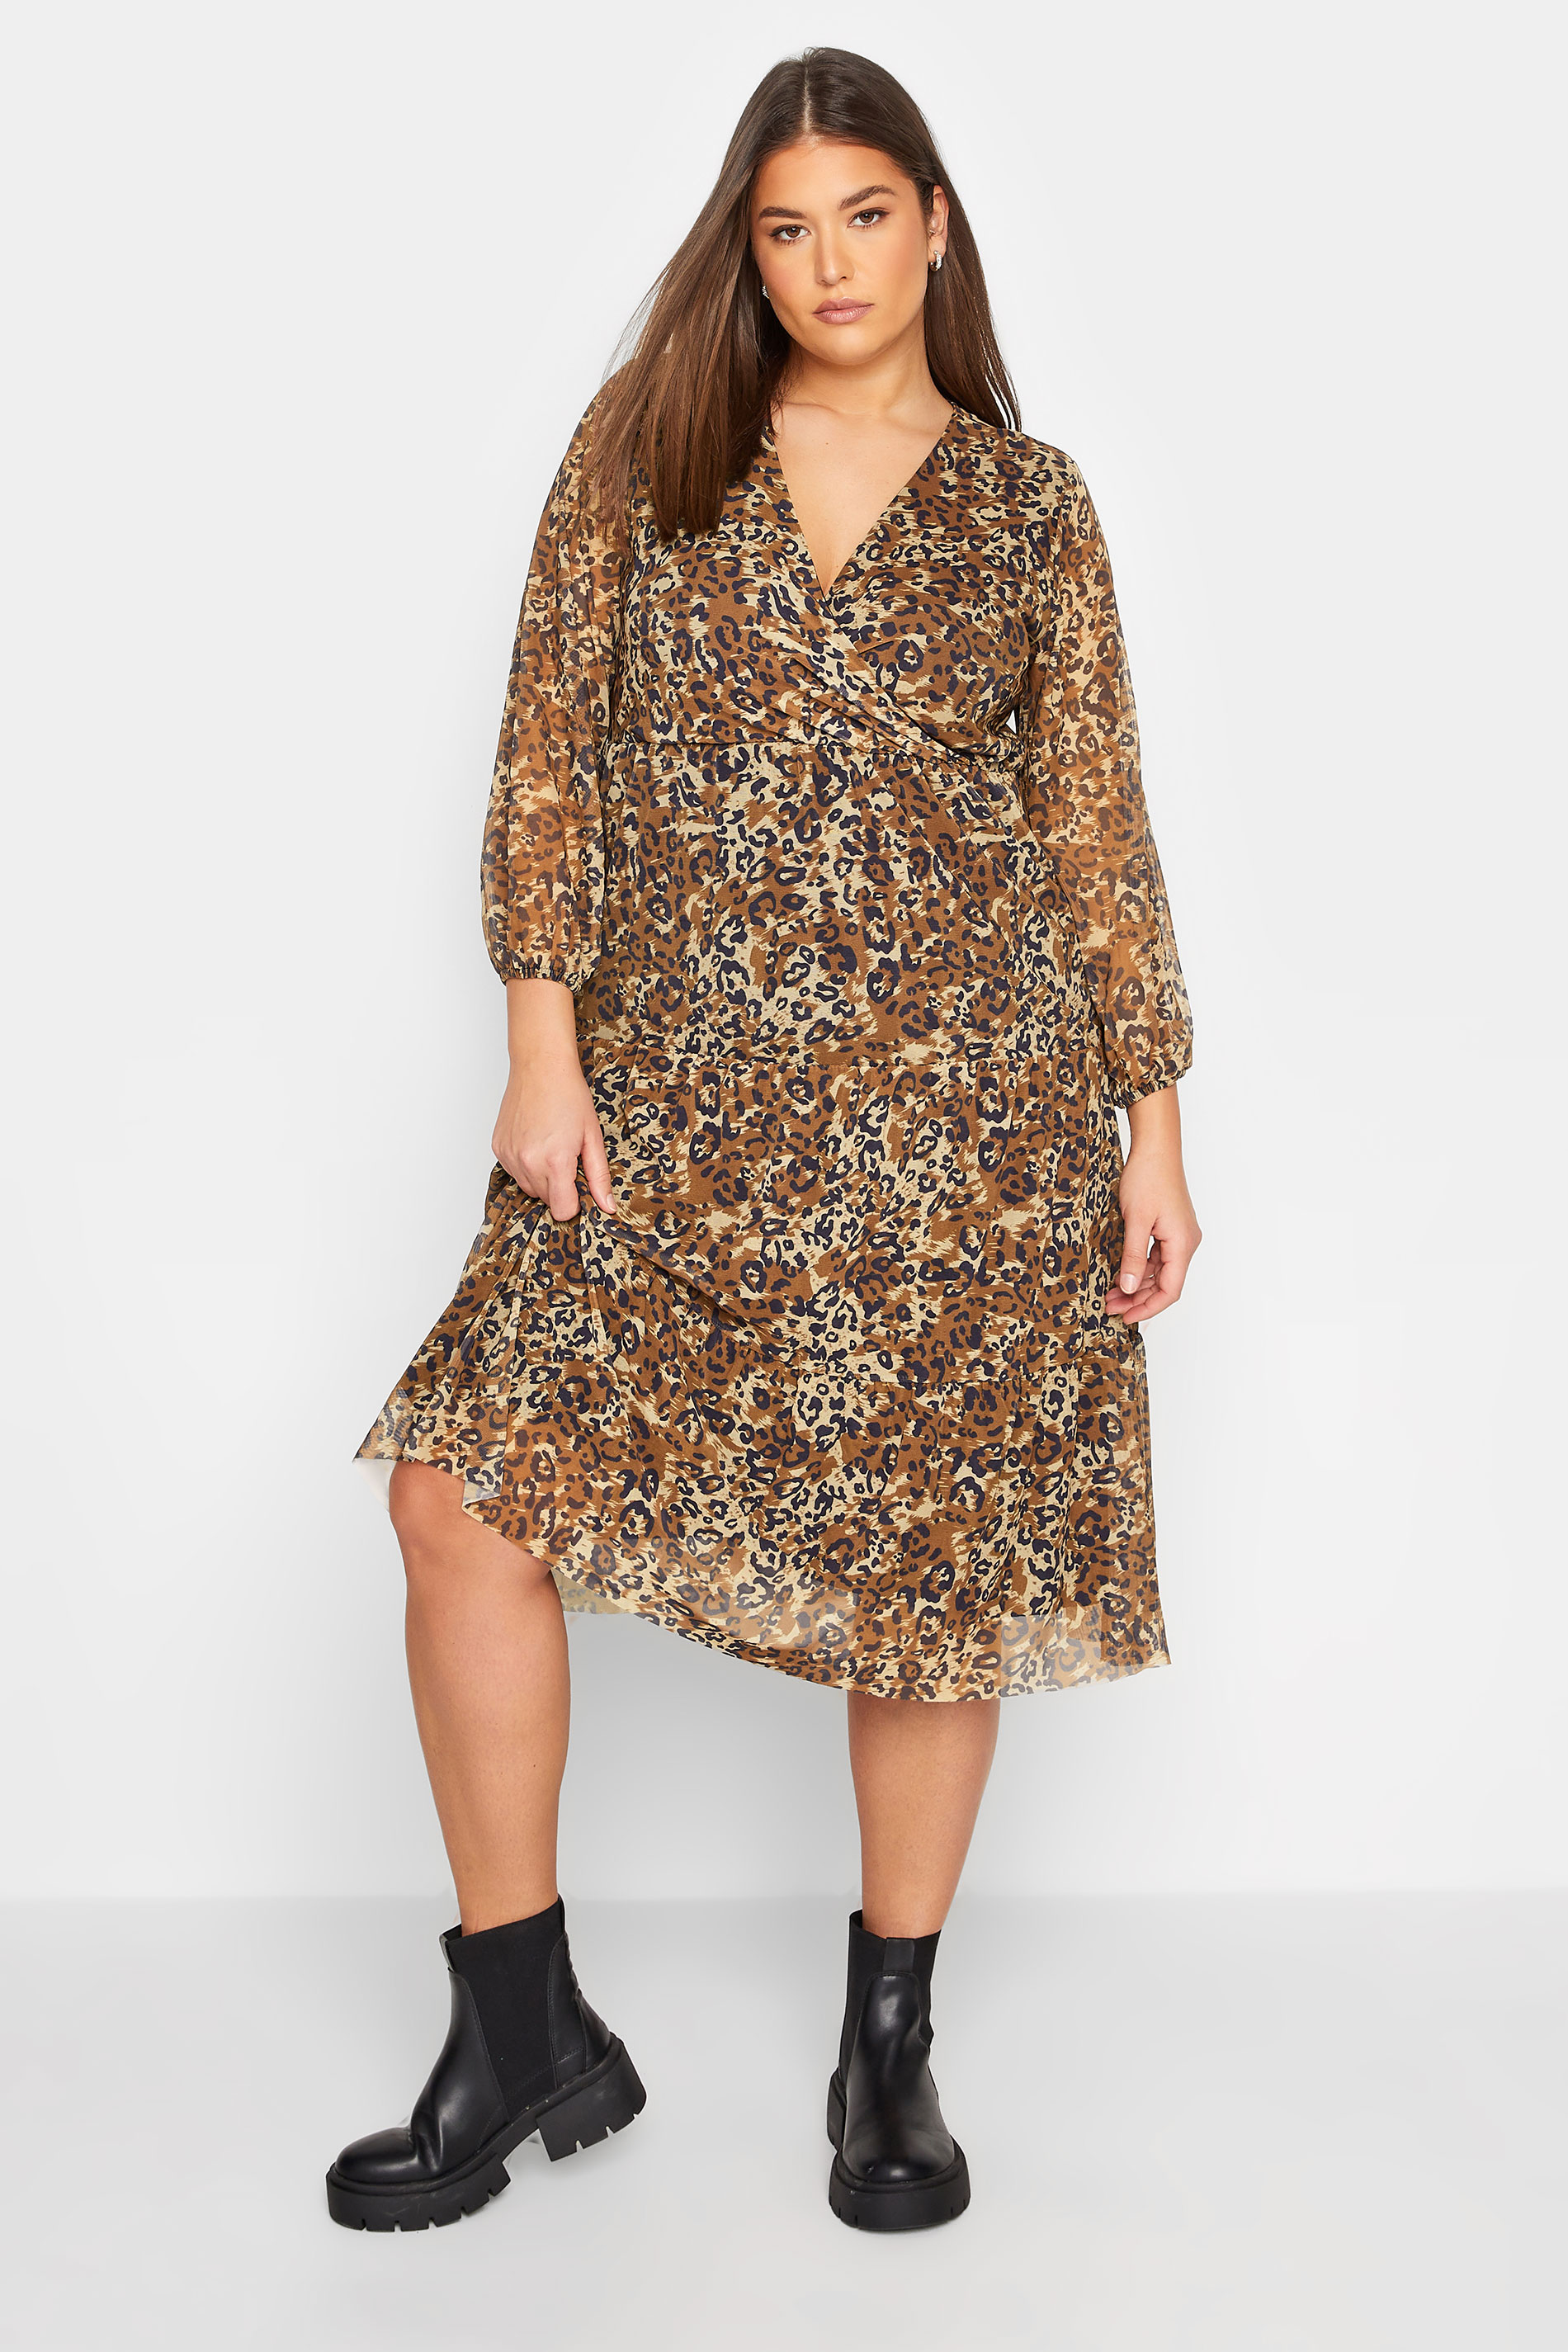 LTS Tall Women's Brown Leopard Print Mesh Dress | Long Tall Sally 2